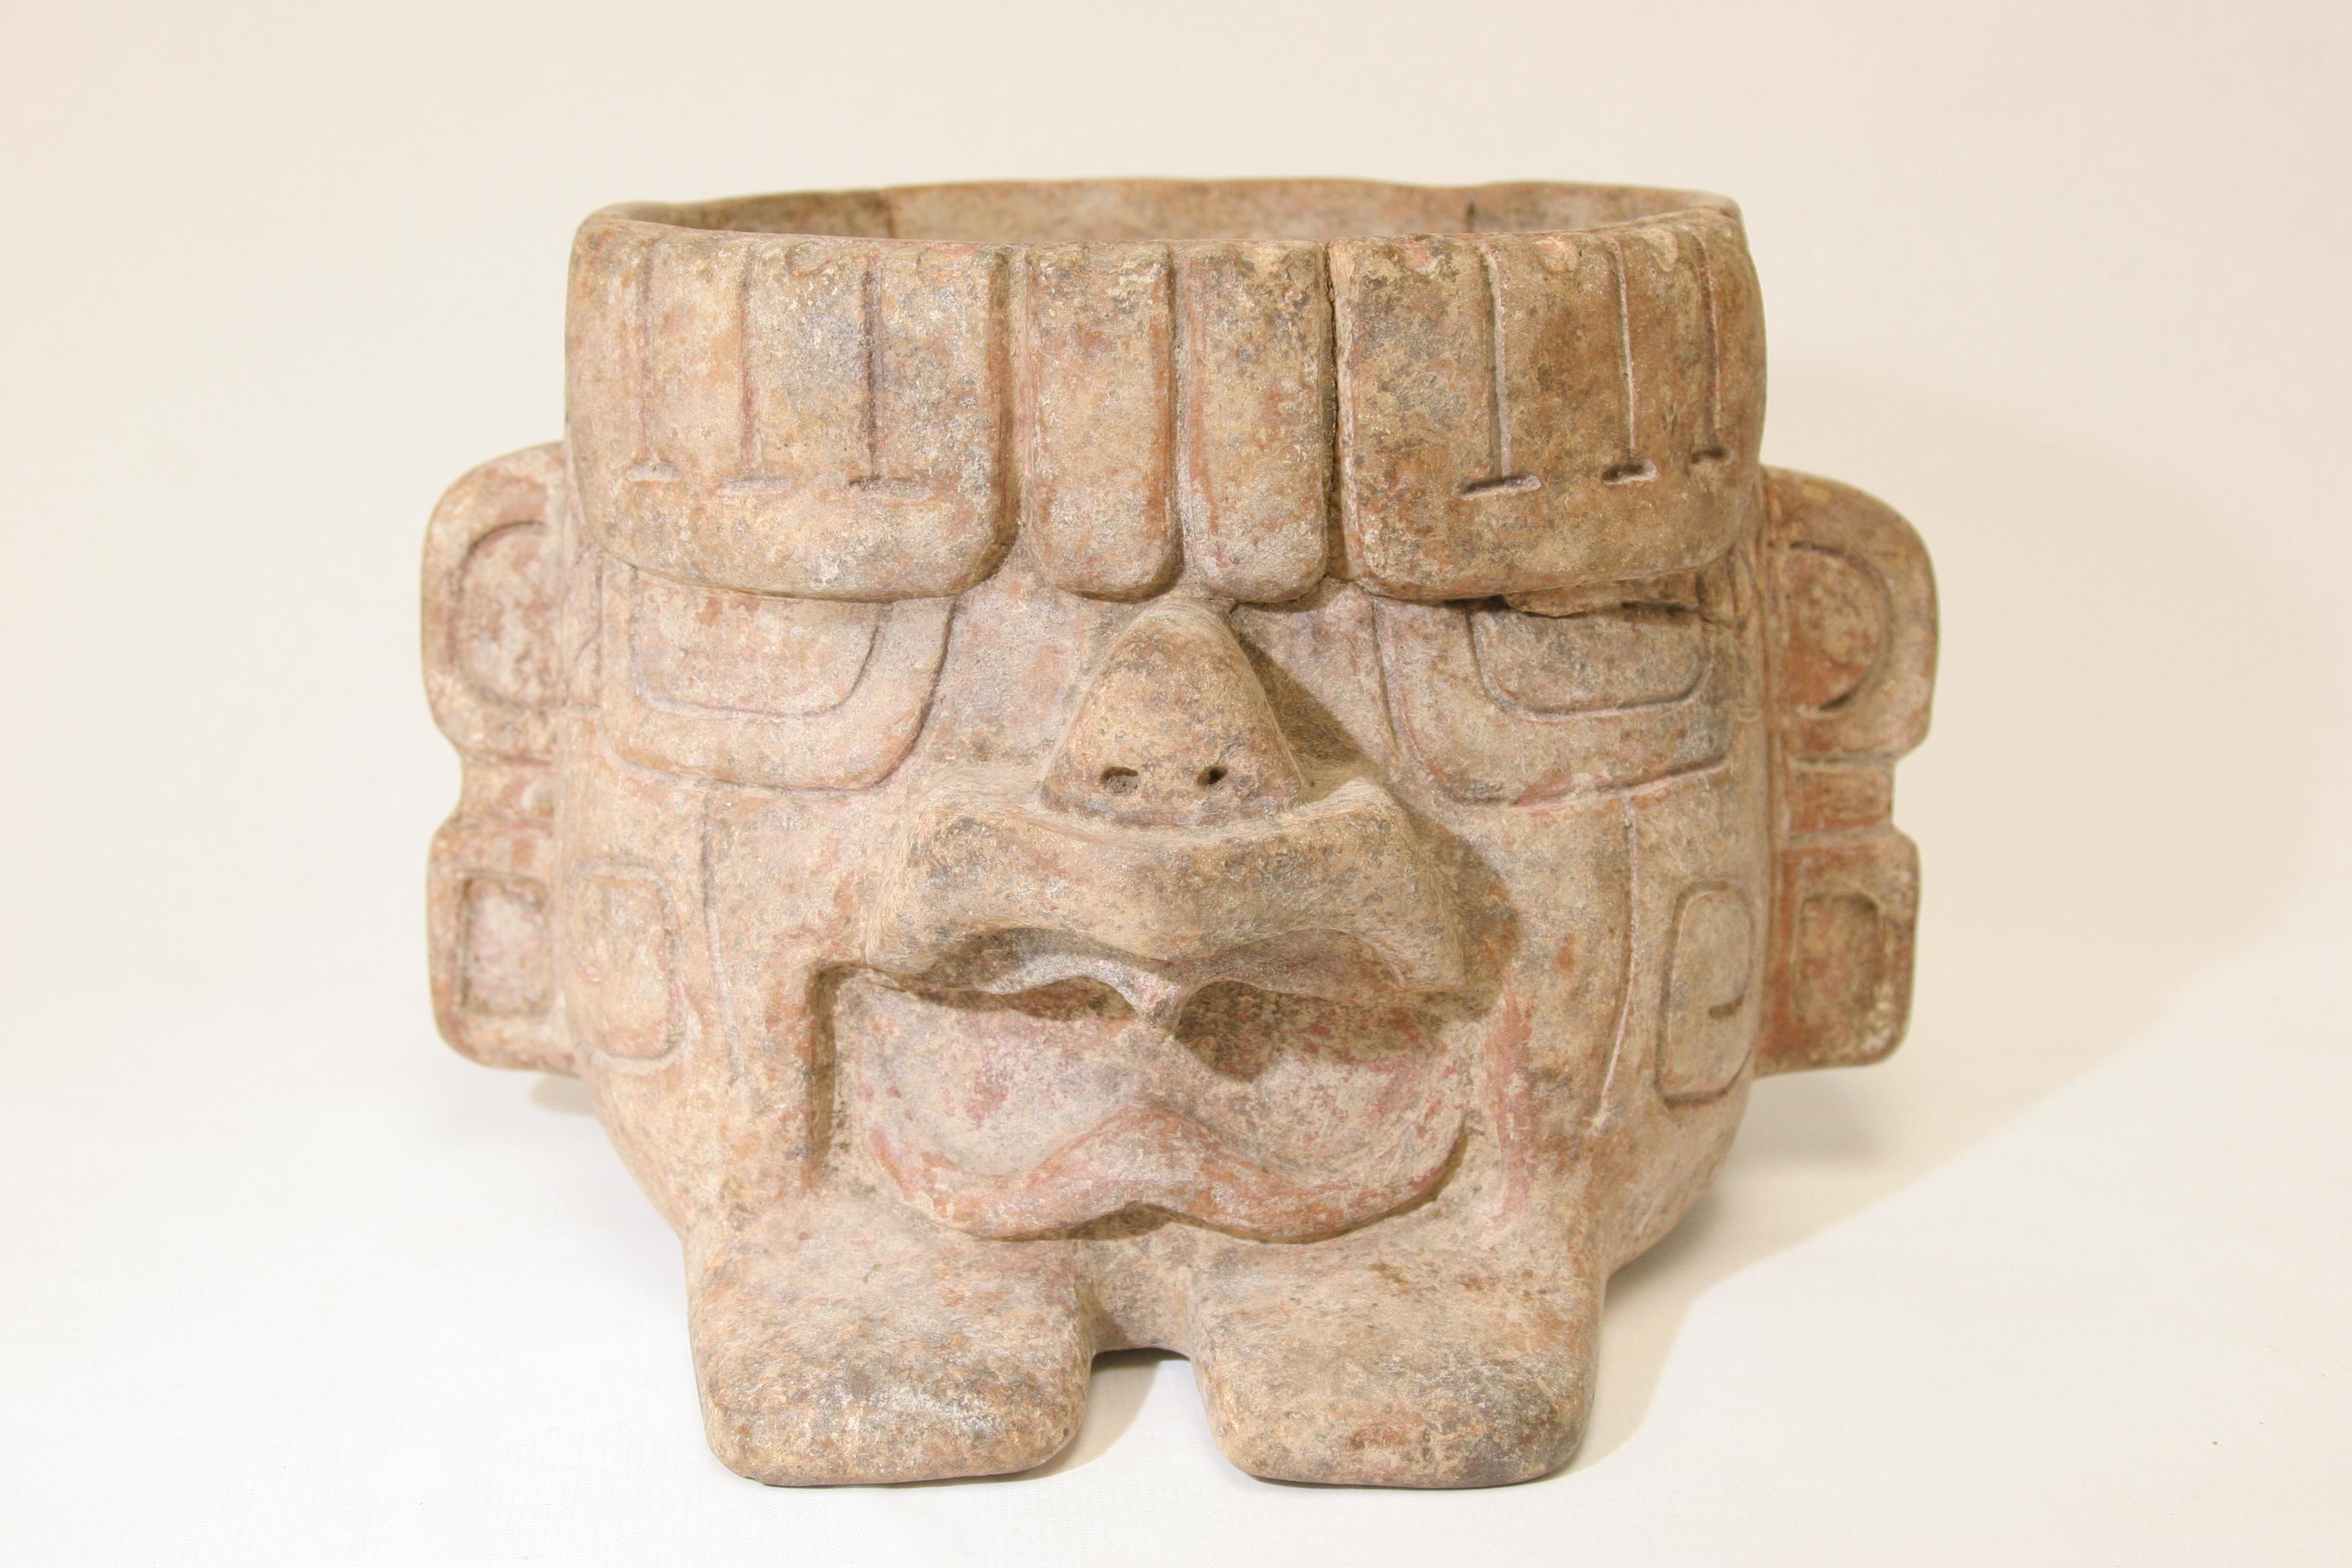 San Bernardino Museum Returns Nearly 1,300 Artifacts to Mexico